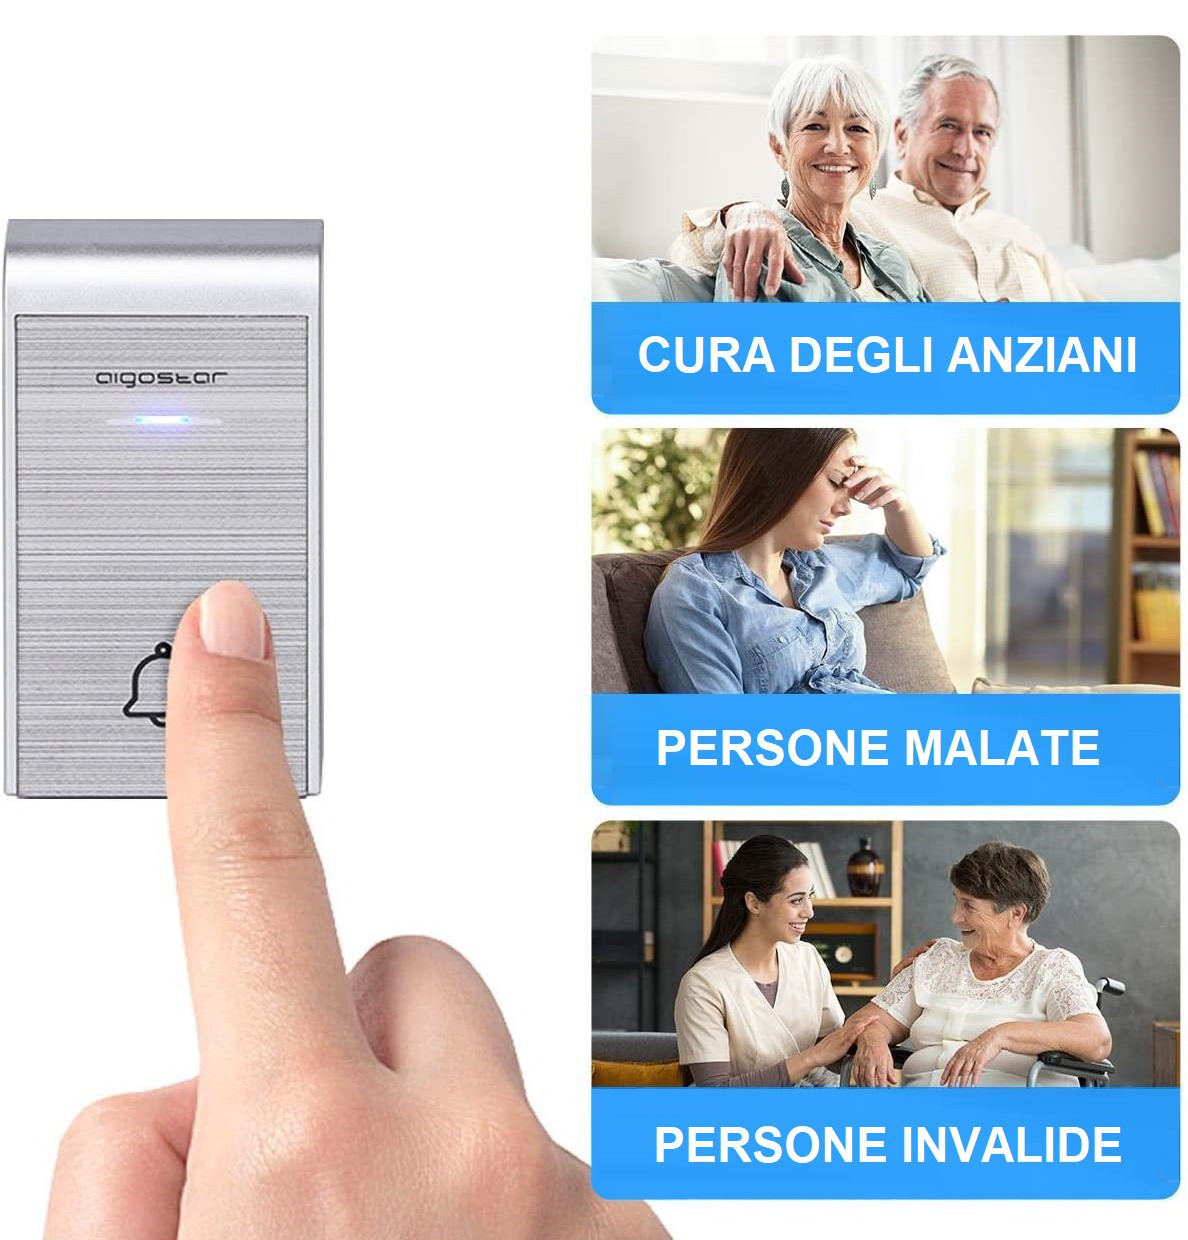 Campanello wireless installato in casa per la cura di anziani, disabili e persone malate (elaborazione 01smartlife su immagine Aigostar)